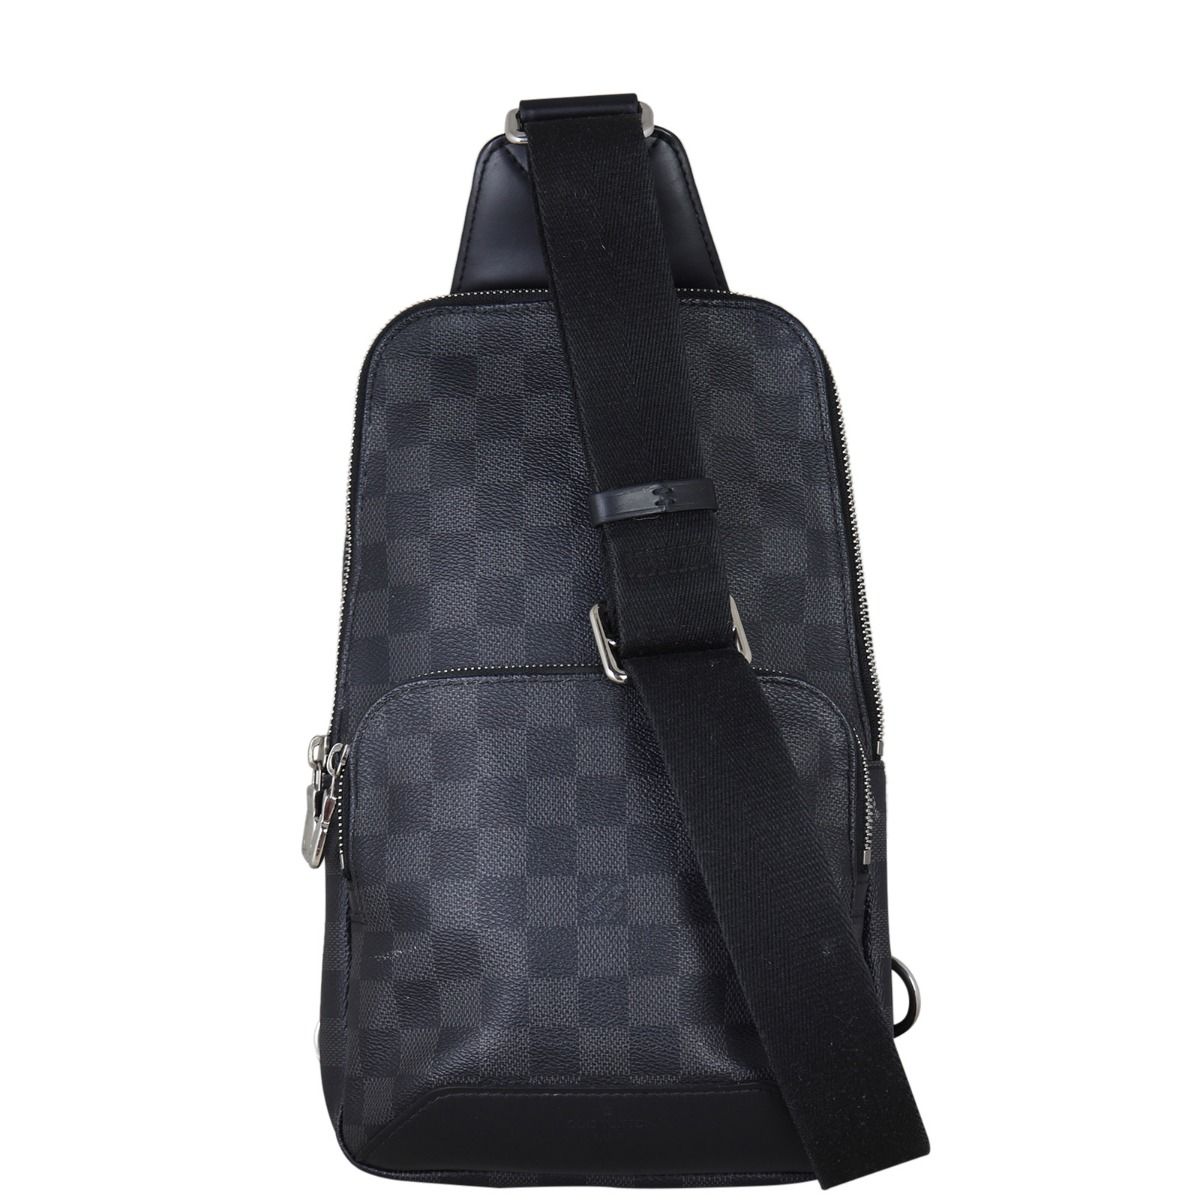 Authentic Louis Vuitton Damier Graphite Avenue Sling Bag